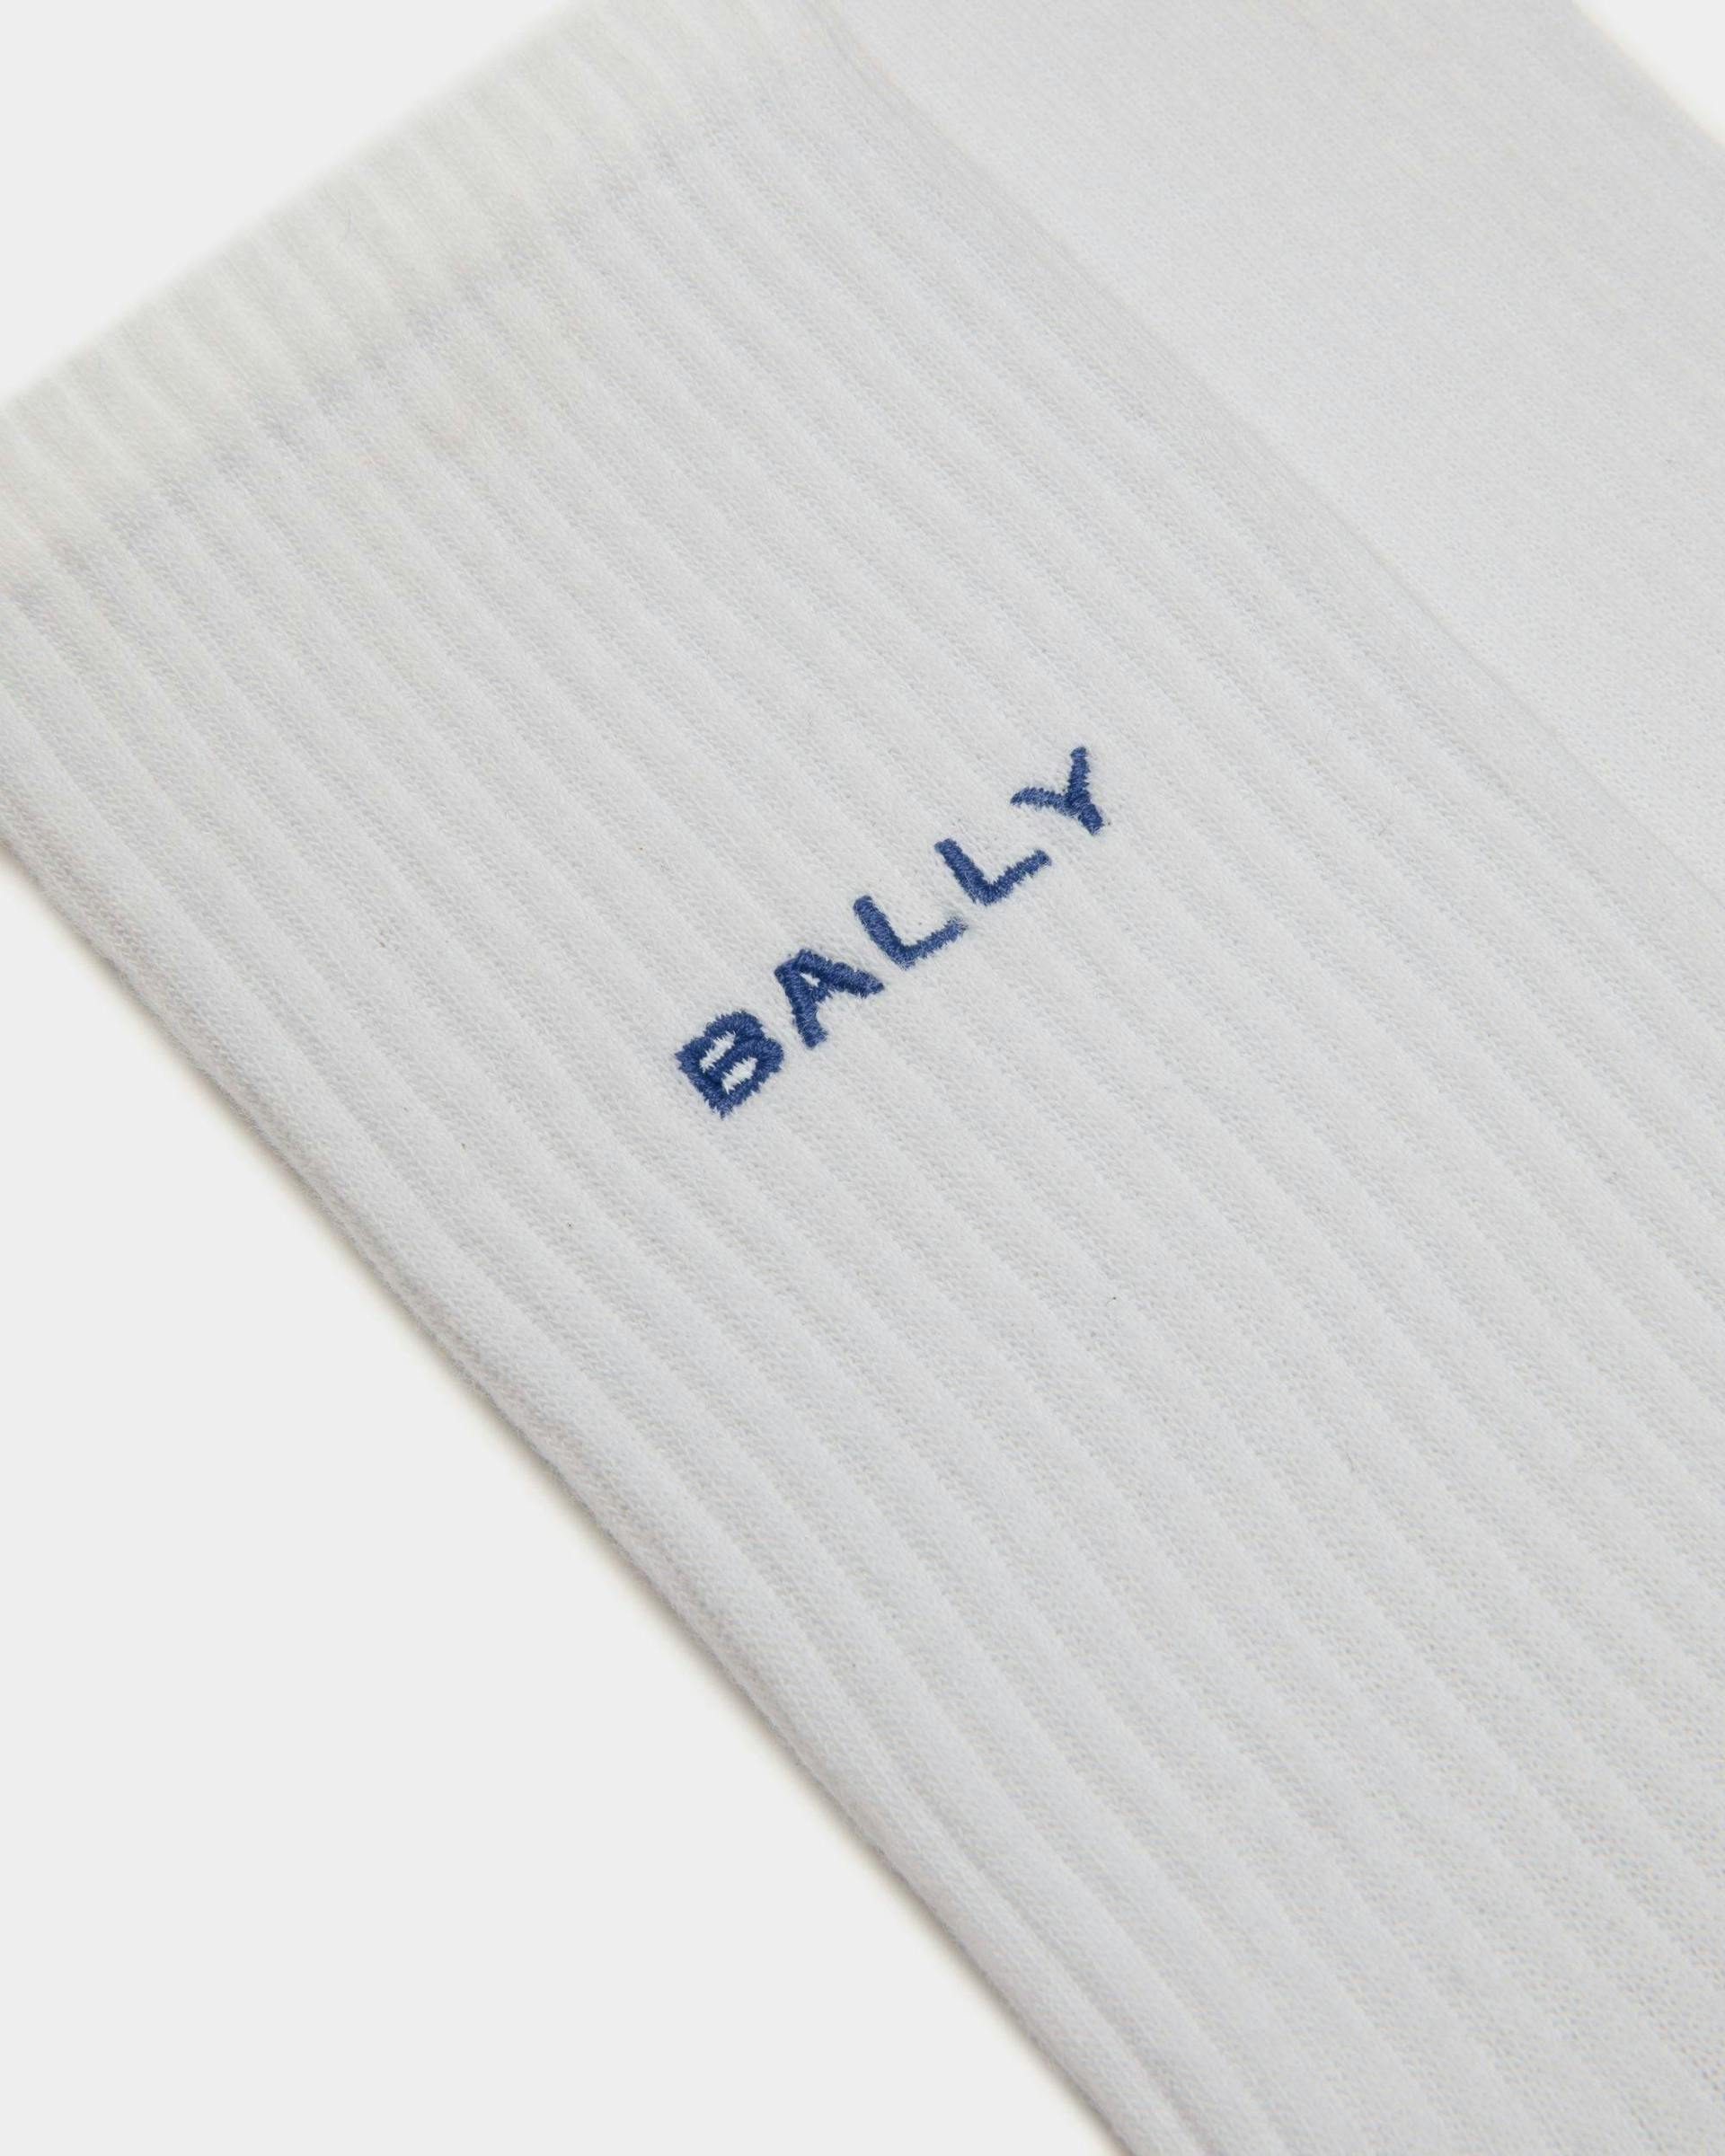 Men's Socks In White Cotton | Bally | Still Life Detail